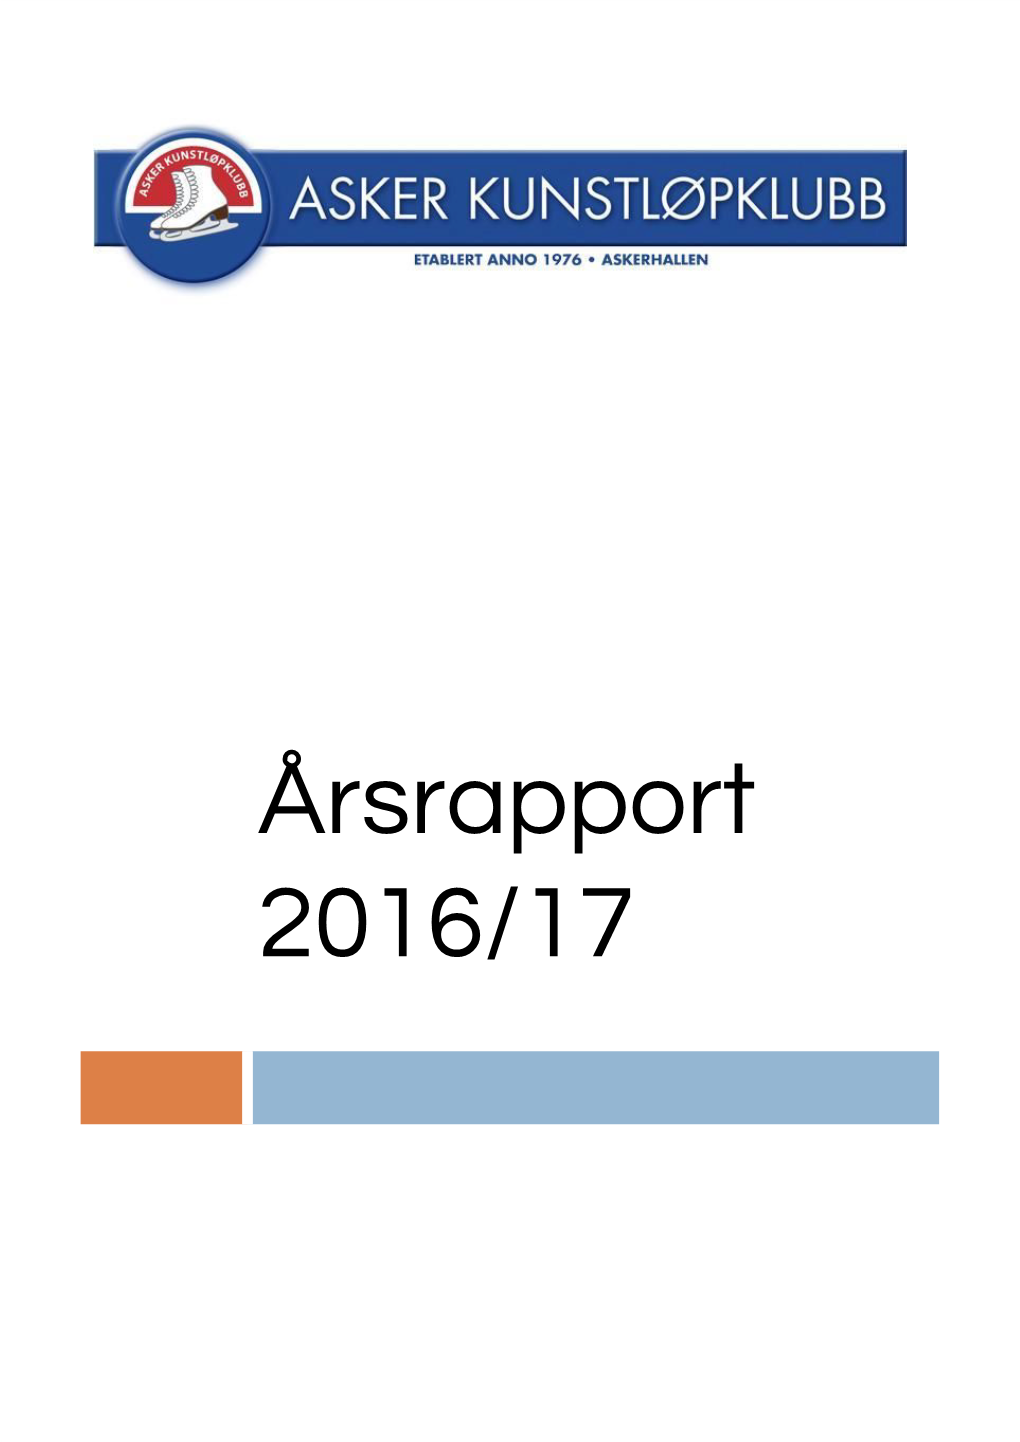 Årsrapport 2016/17